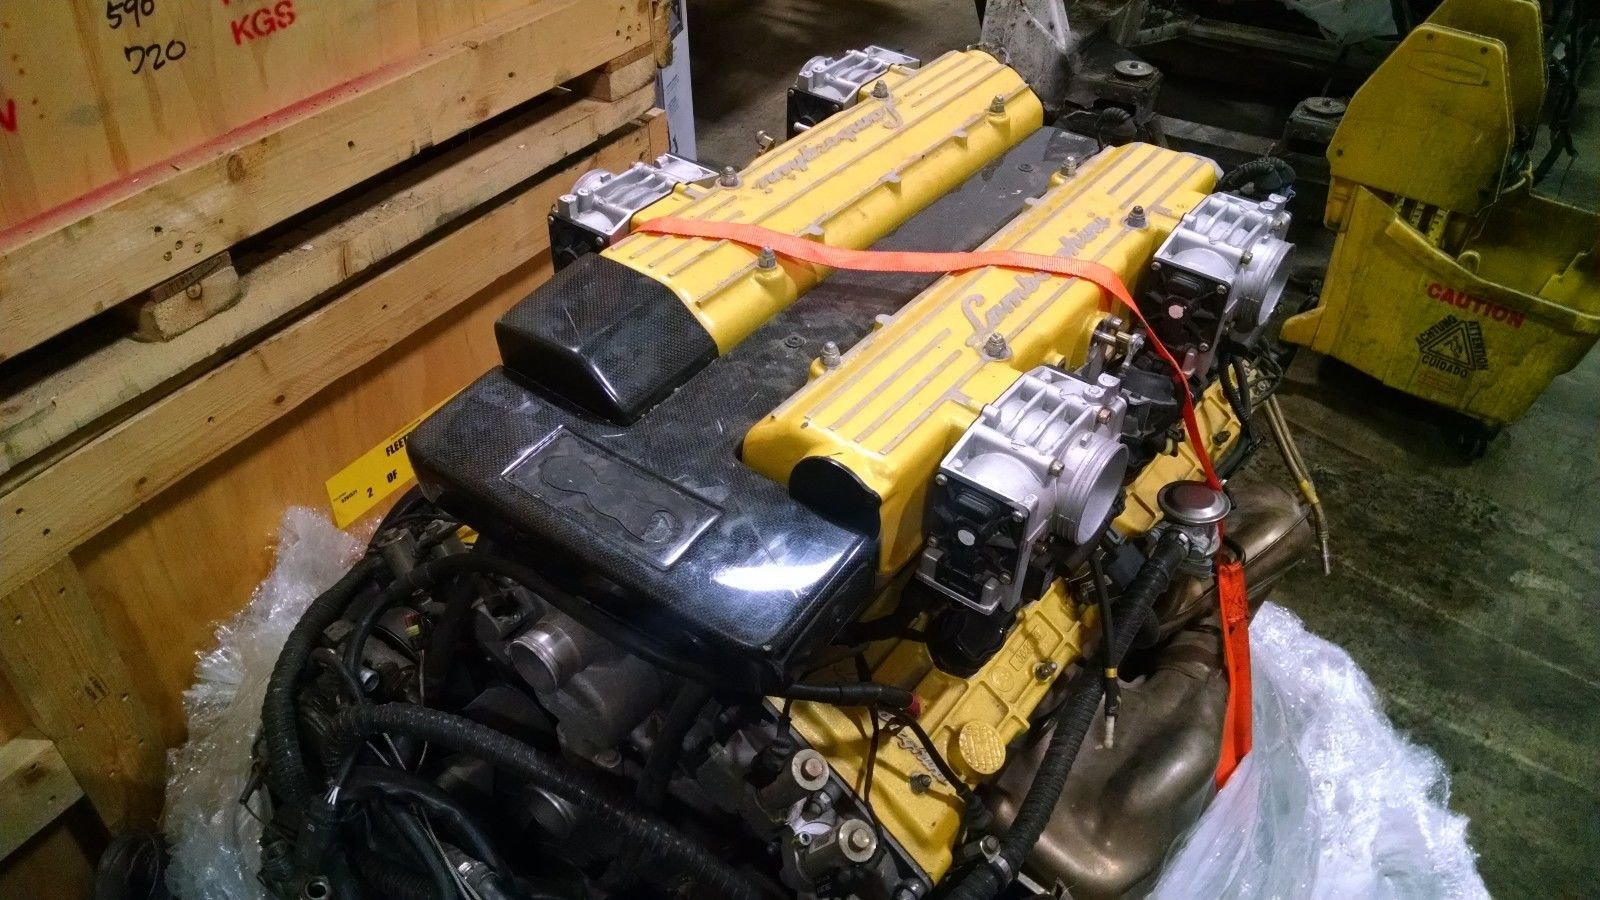 Motor 6,2 litru V12 z vozu Lamborghini Murcielago